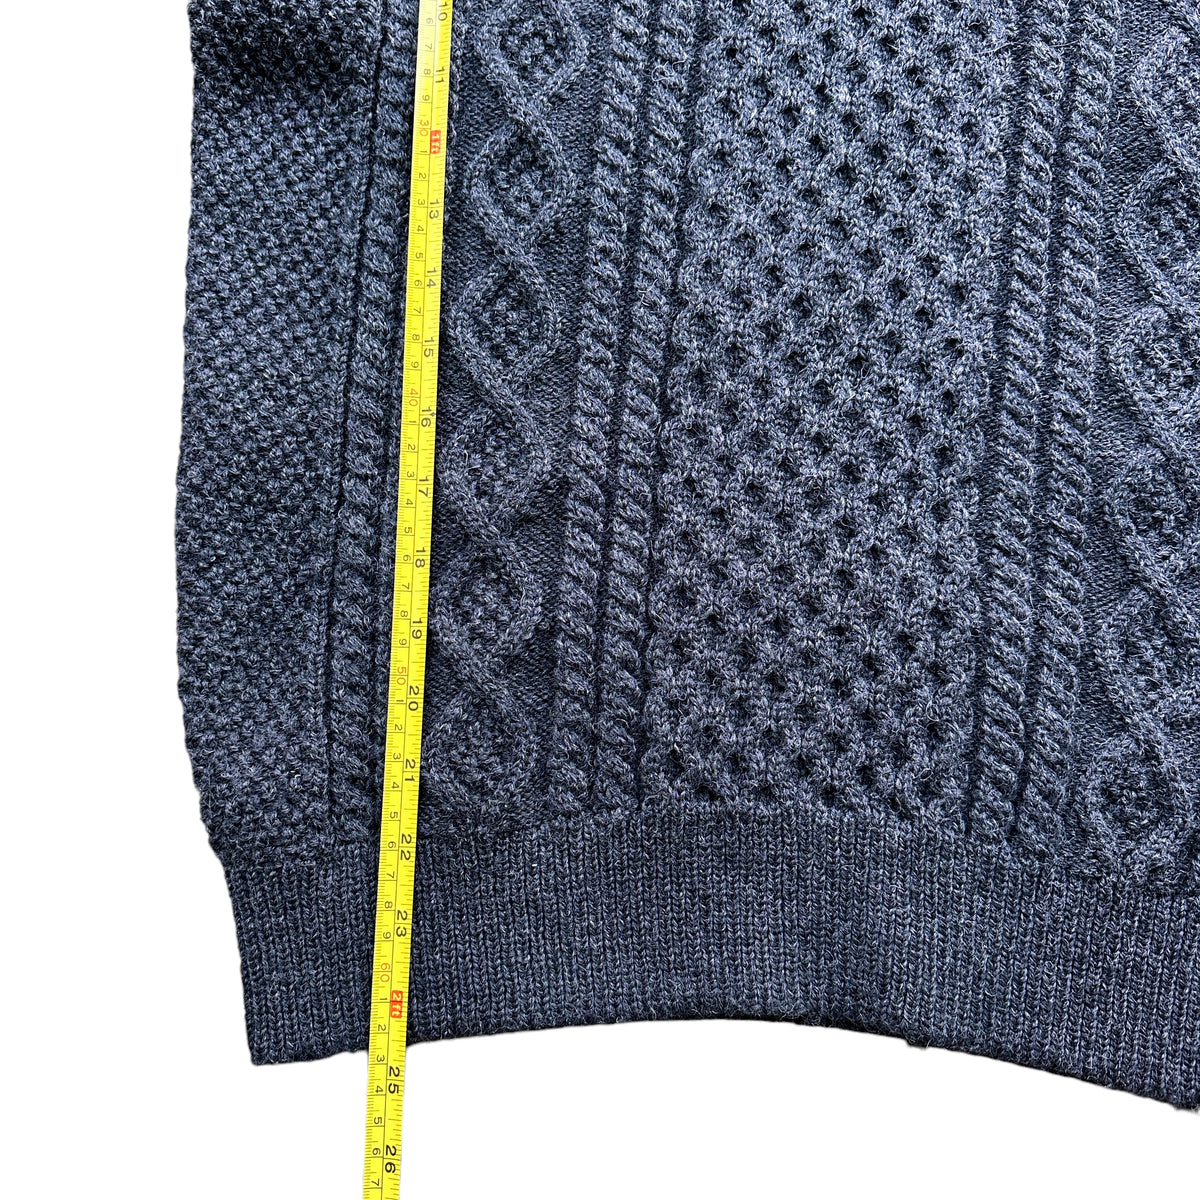 Noah wool hooded fisherman's sweater medium – Vintage Sponsor